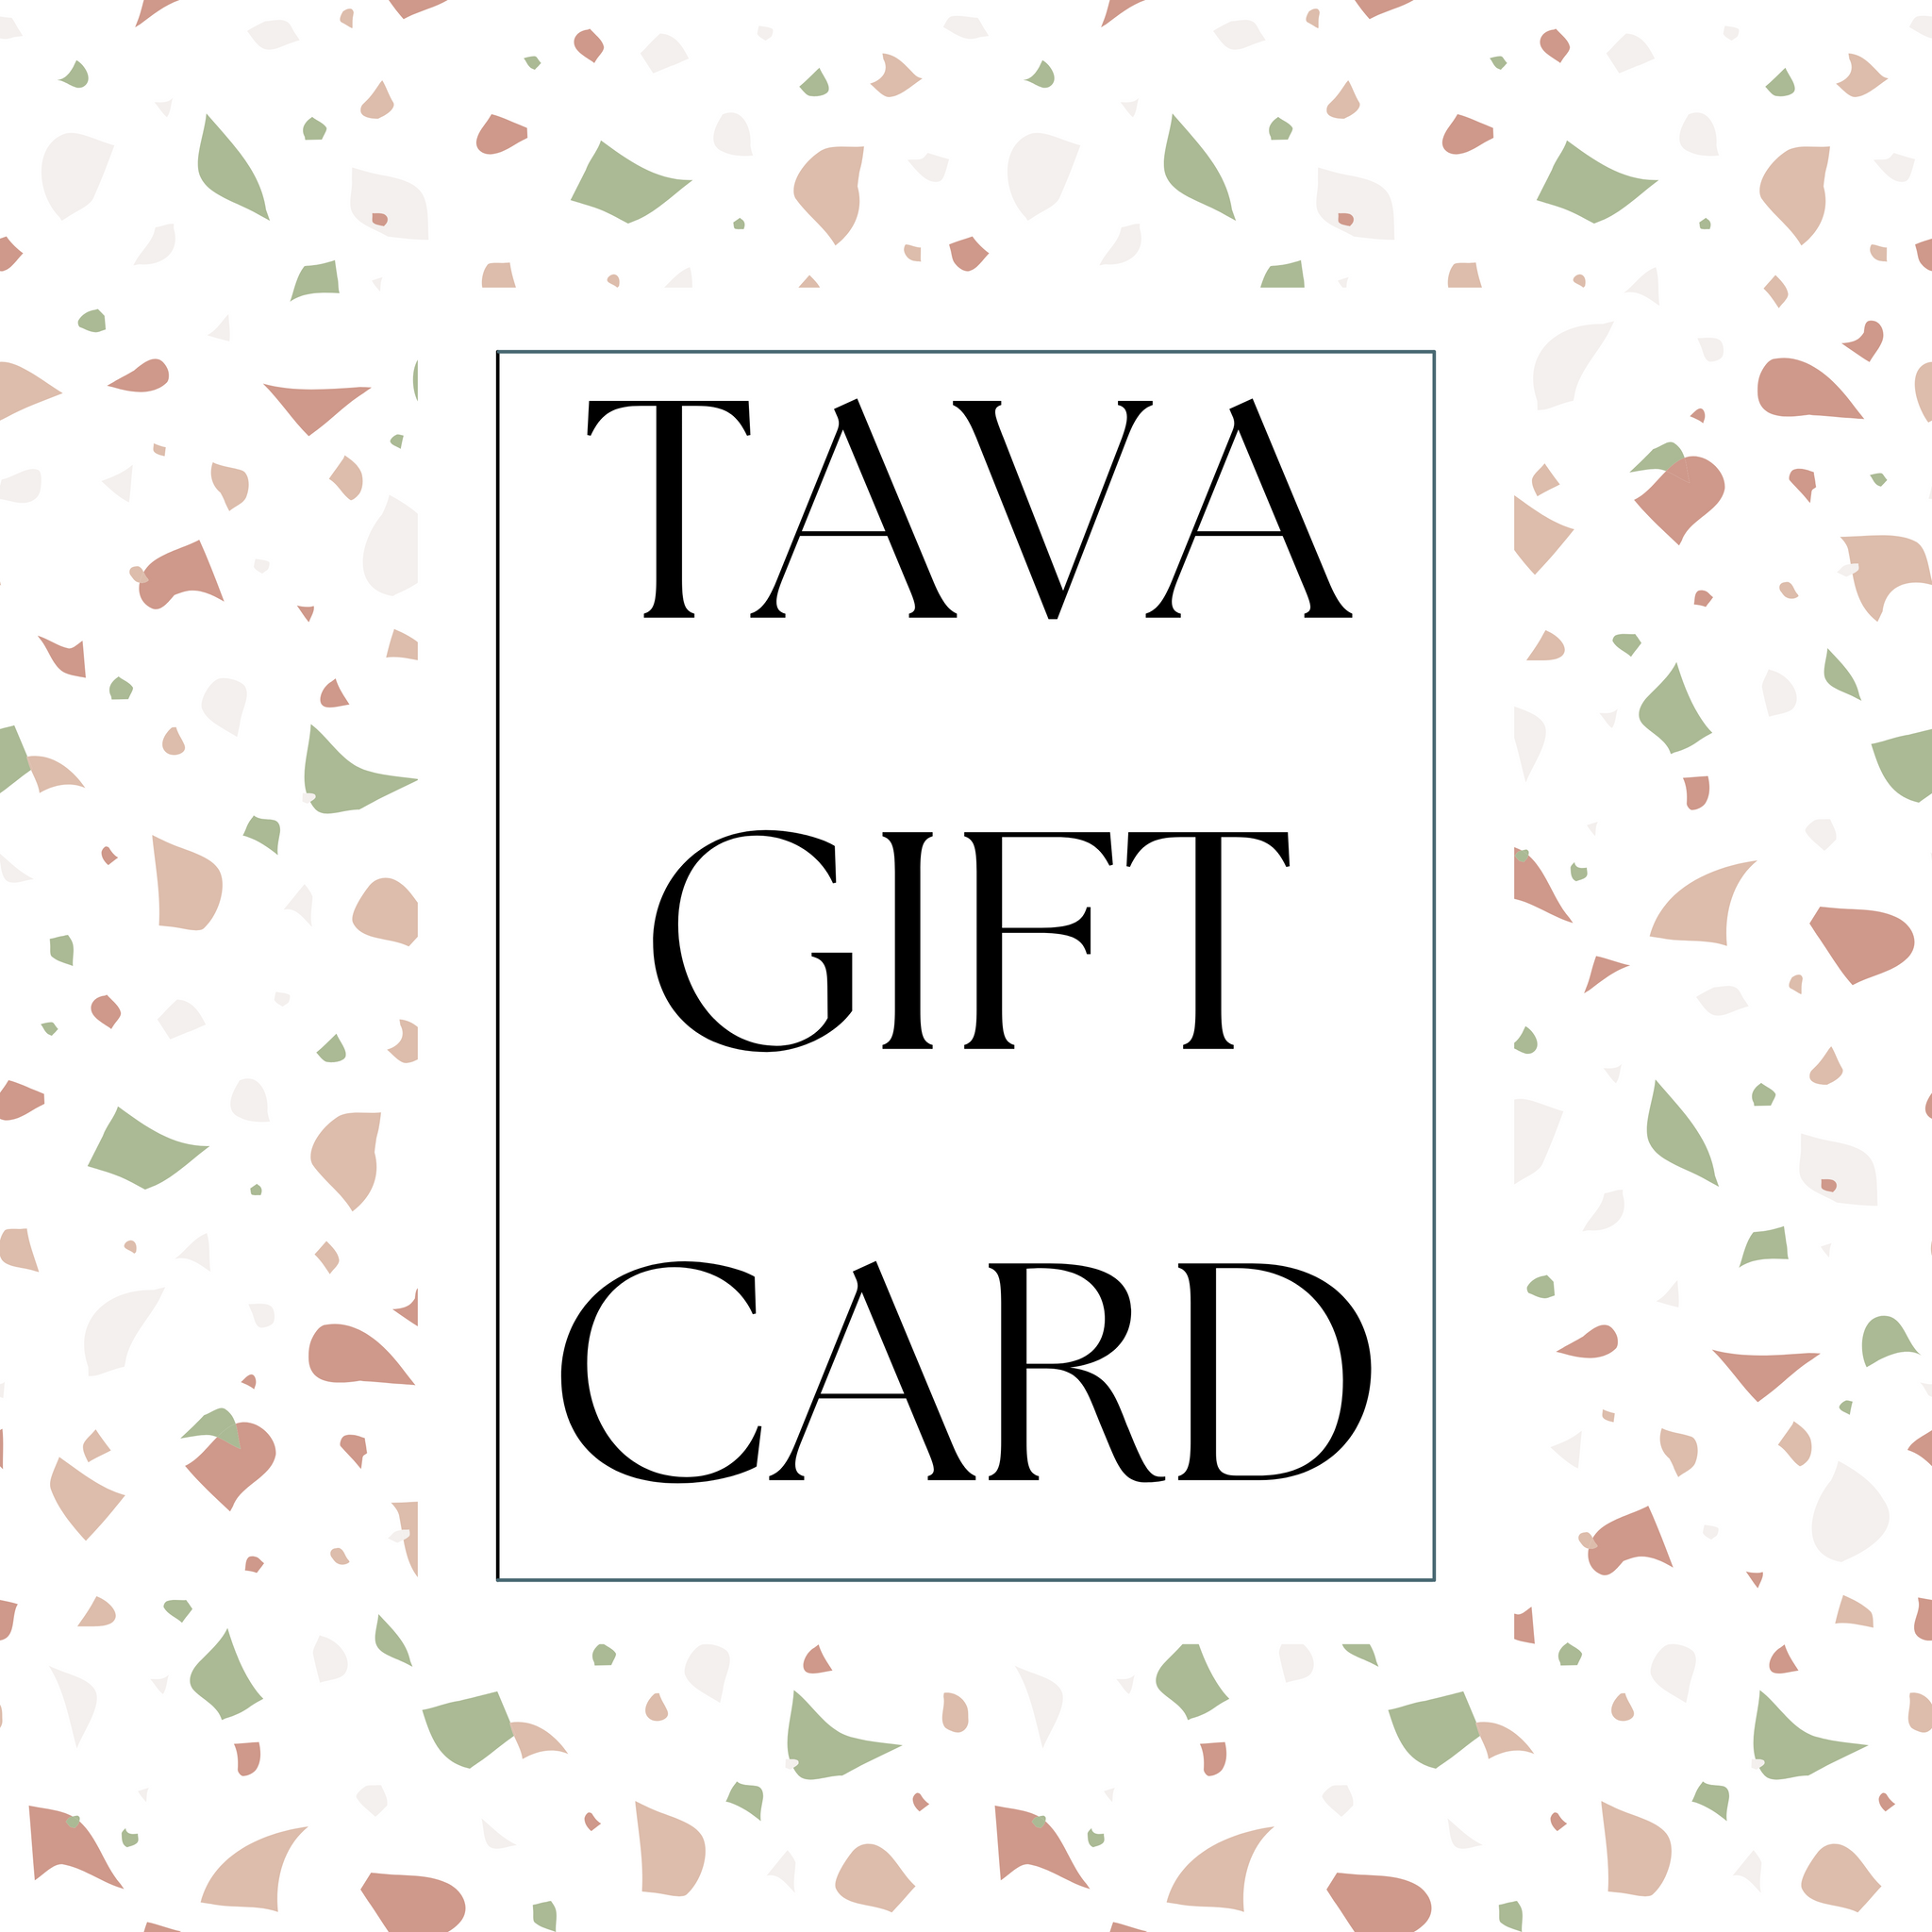 TAVA Gift Card